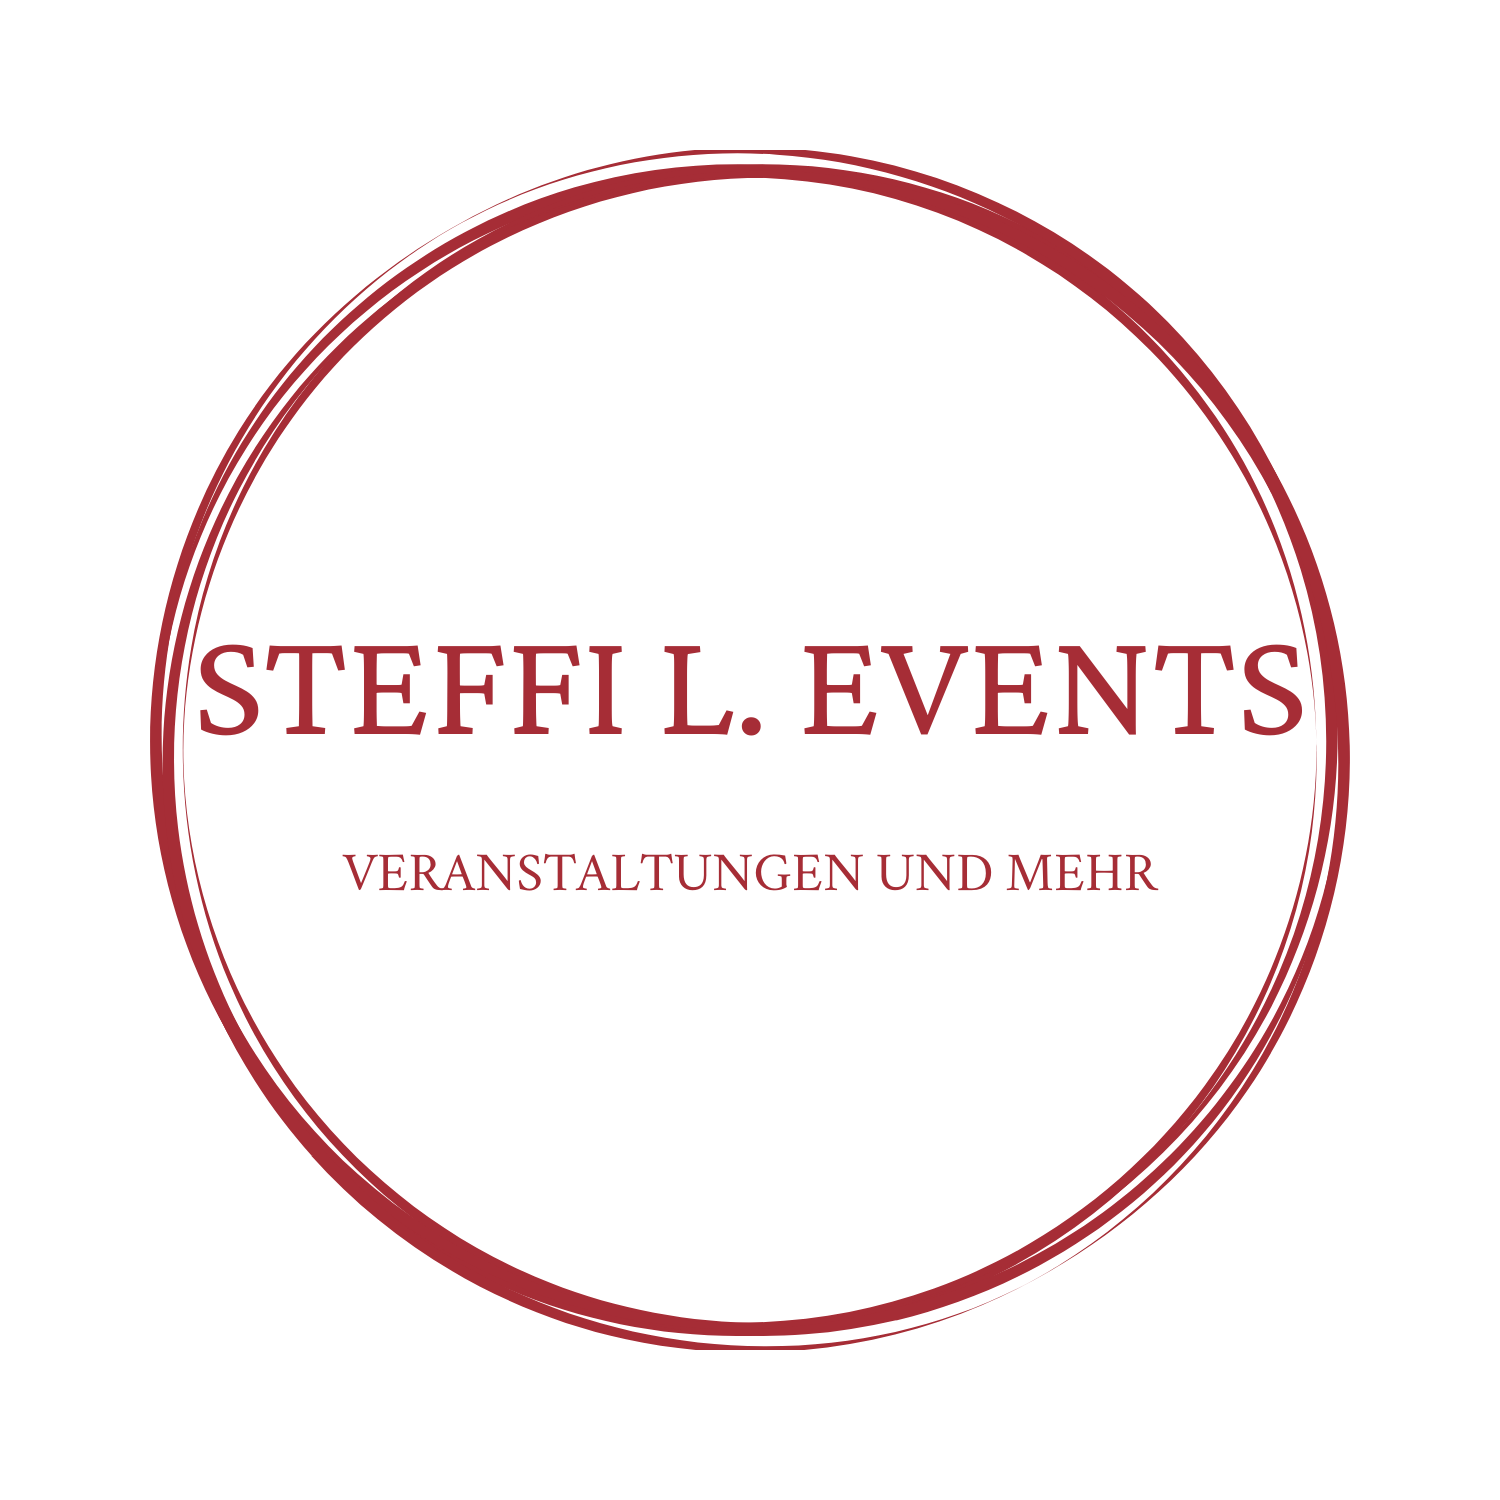 Steffi L. Events - Veranstaltungen und mehr Logo